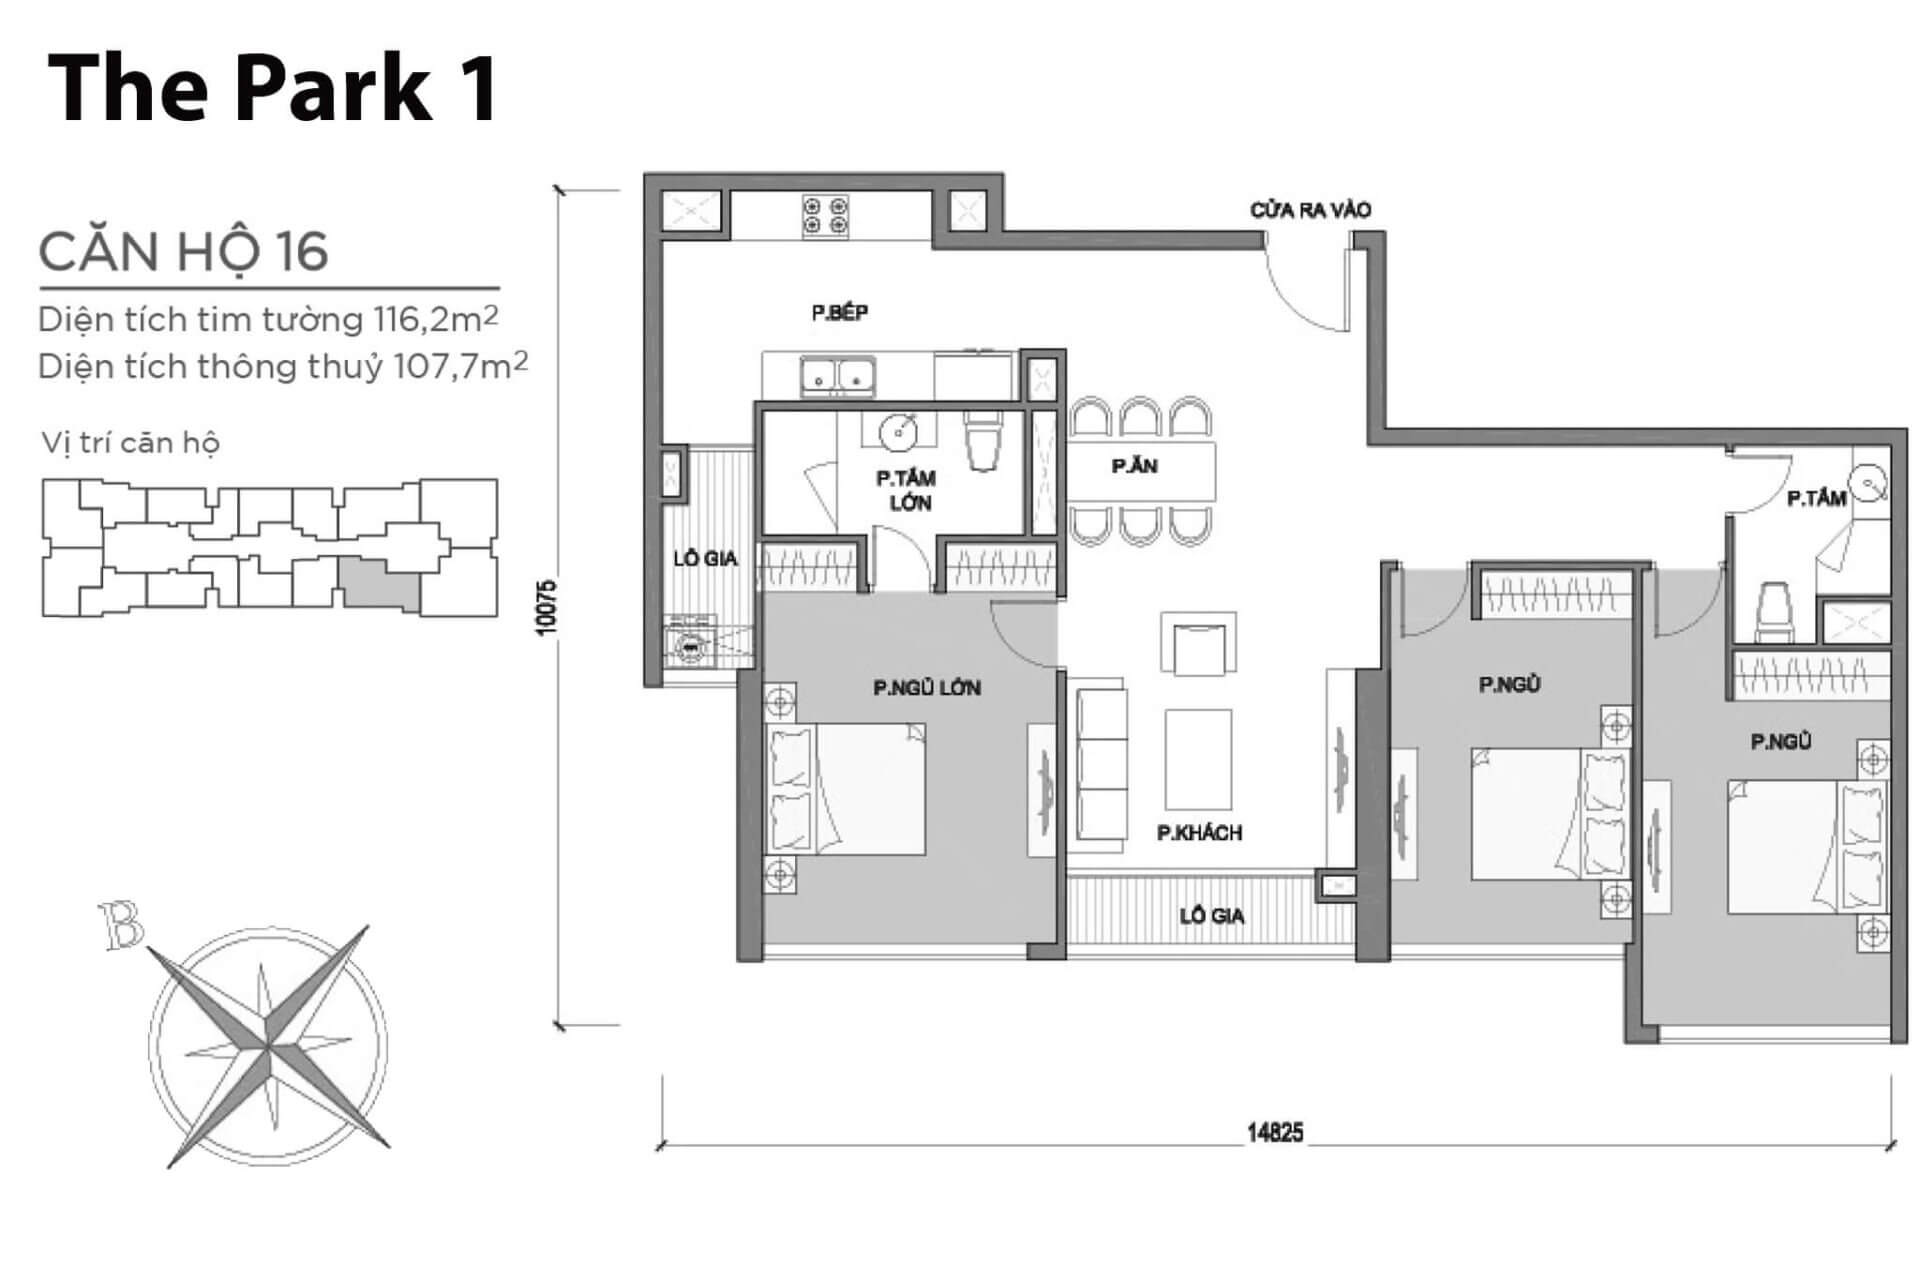 mặt bằng layout căn hộ số 16 Park 1 Vinhomes Central Park